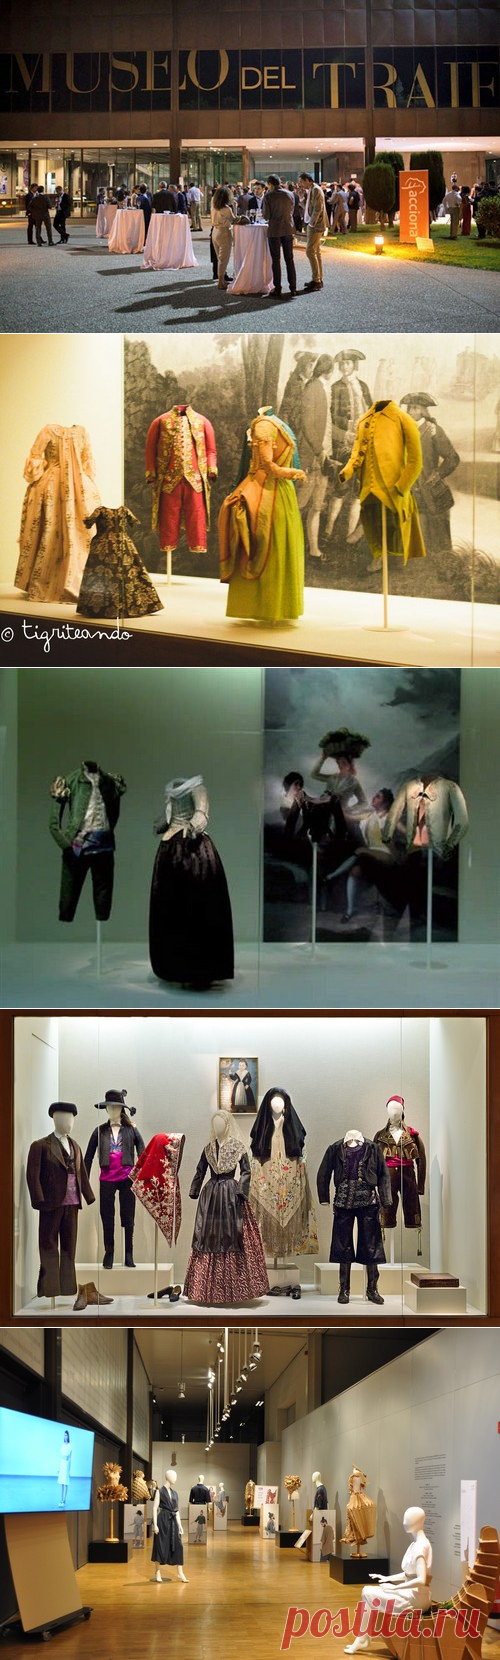 Музей Моды (Костюма) в Мадриде El Museo del Traje , история моды в Испании начиная с 15 века, одежда  для аристократов , для городского и сельского населения Испании.